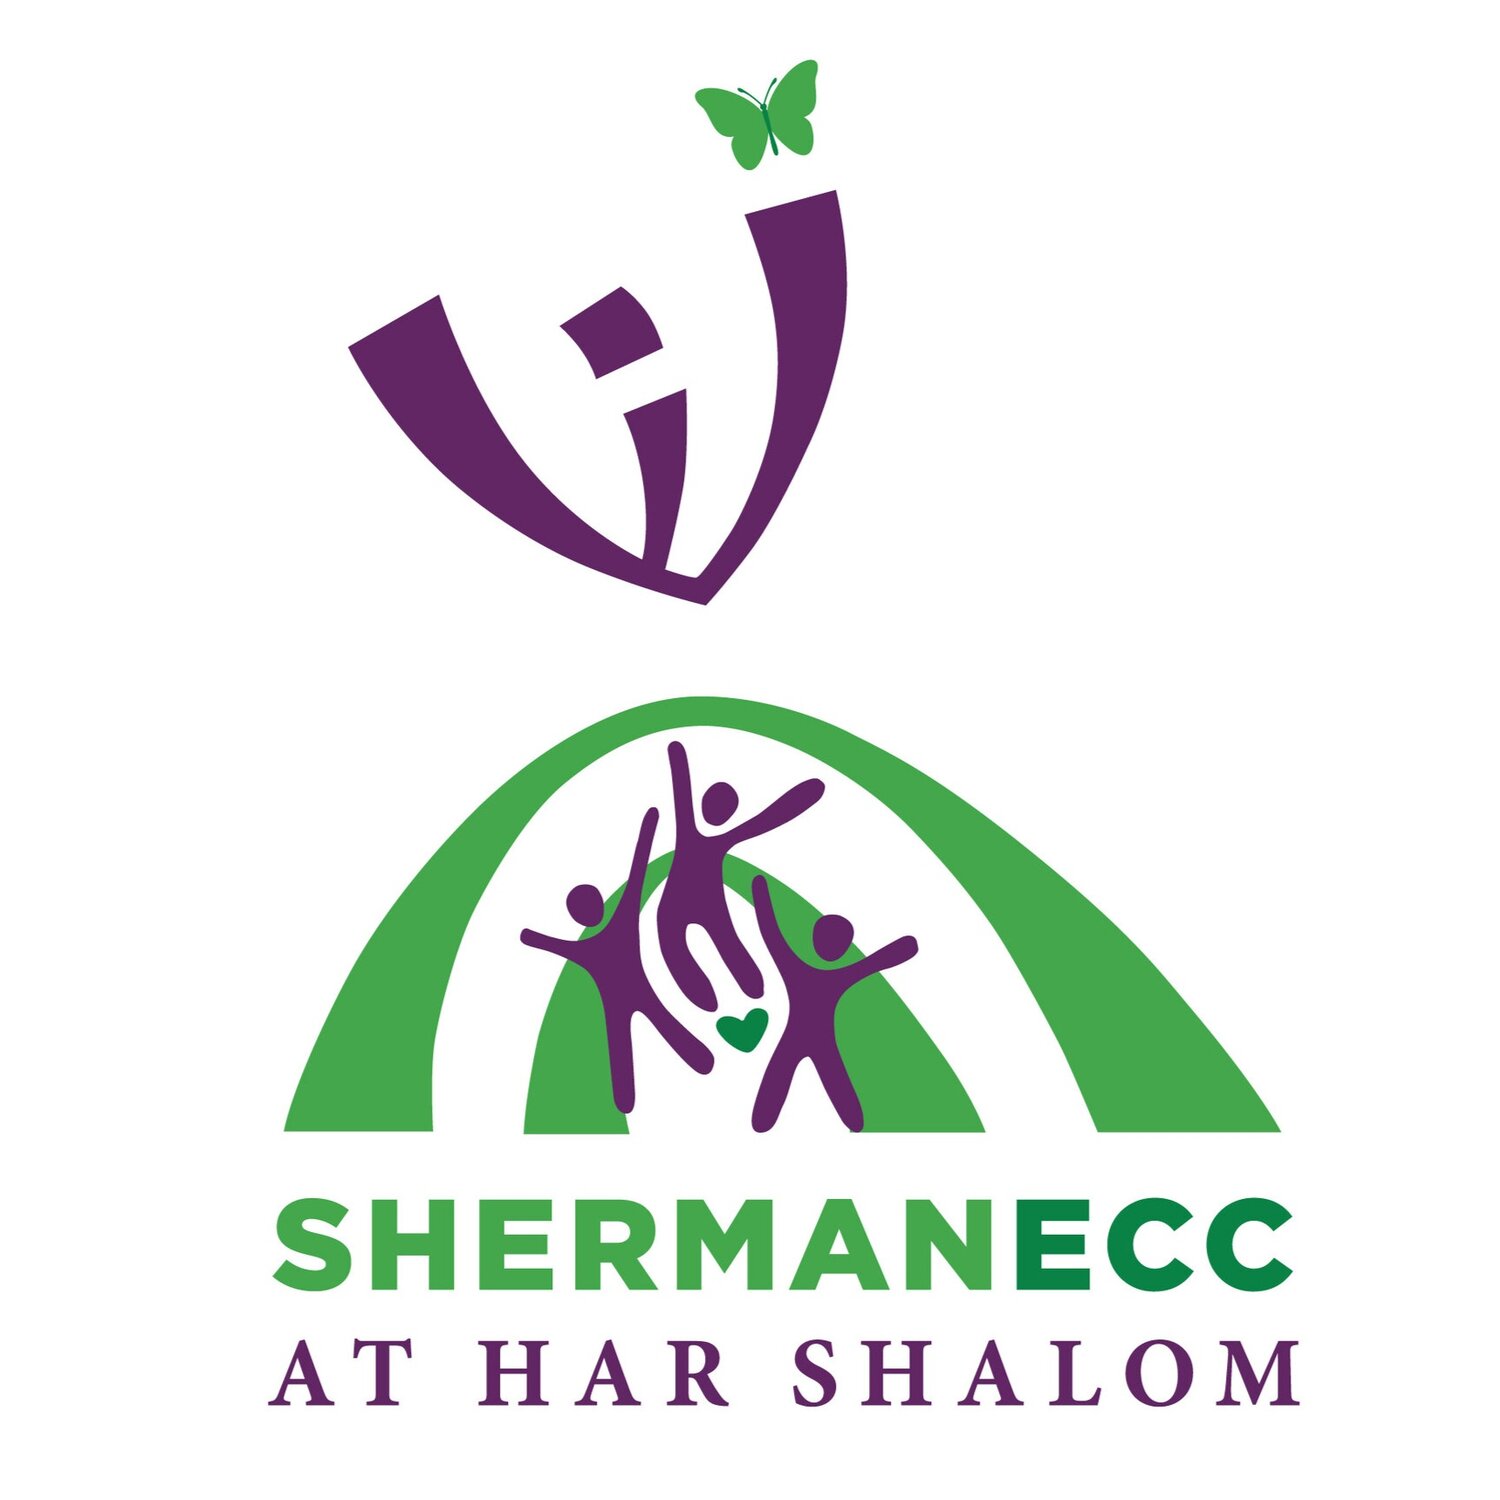 Sherman ECC at Har Shalom